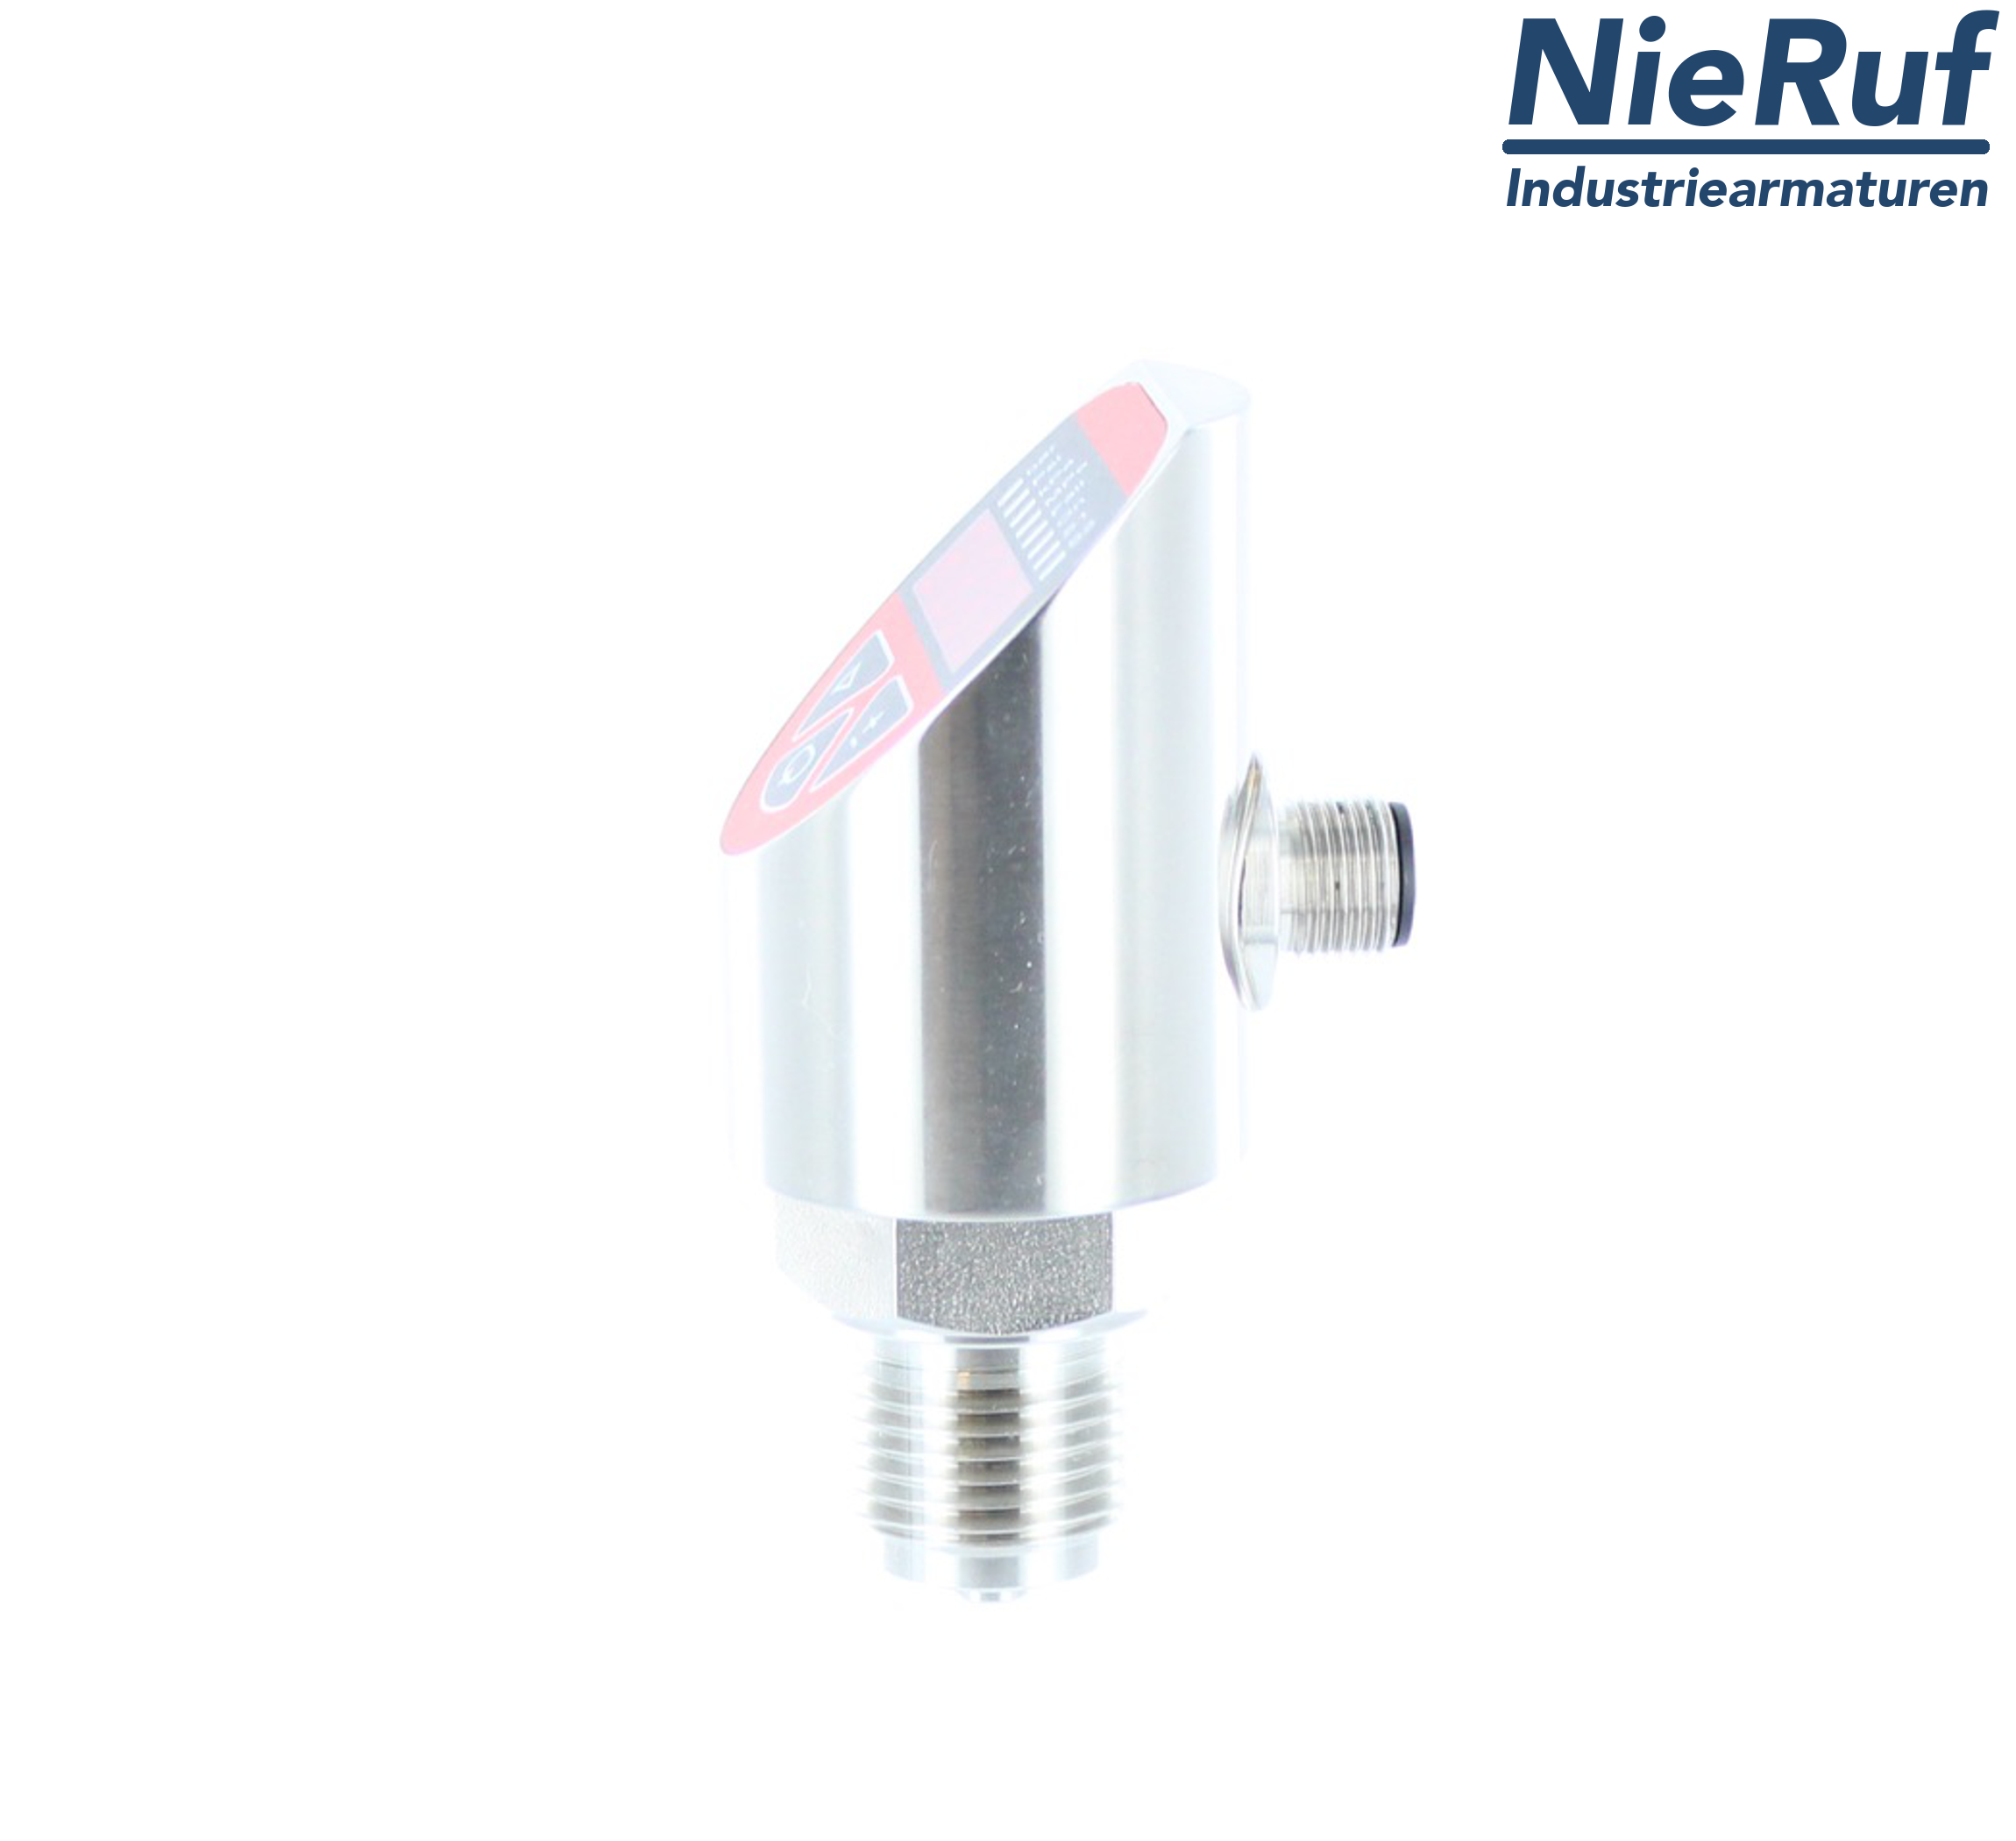 digital pressure sensor G 1/2" B IB 4-wire: 1xPNP, 1x4 - 20mA, Desina FPM 0,0 - 100,0 bar